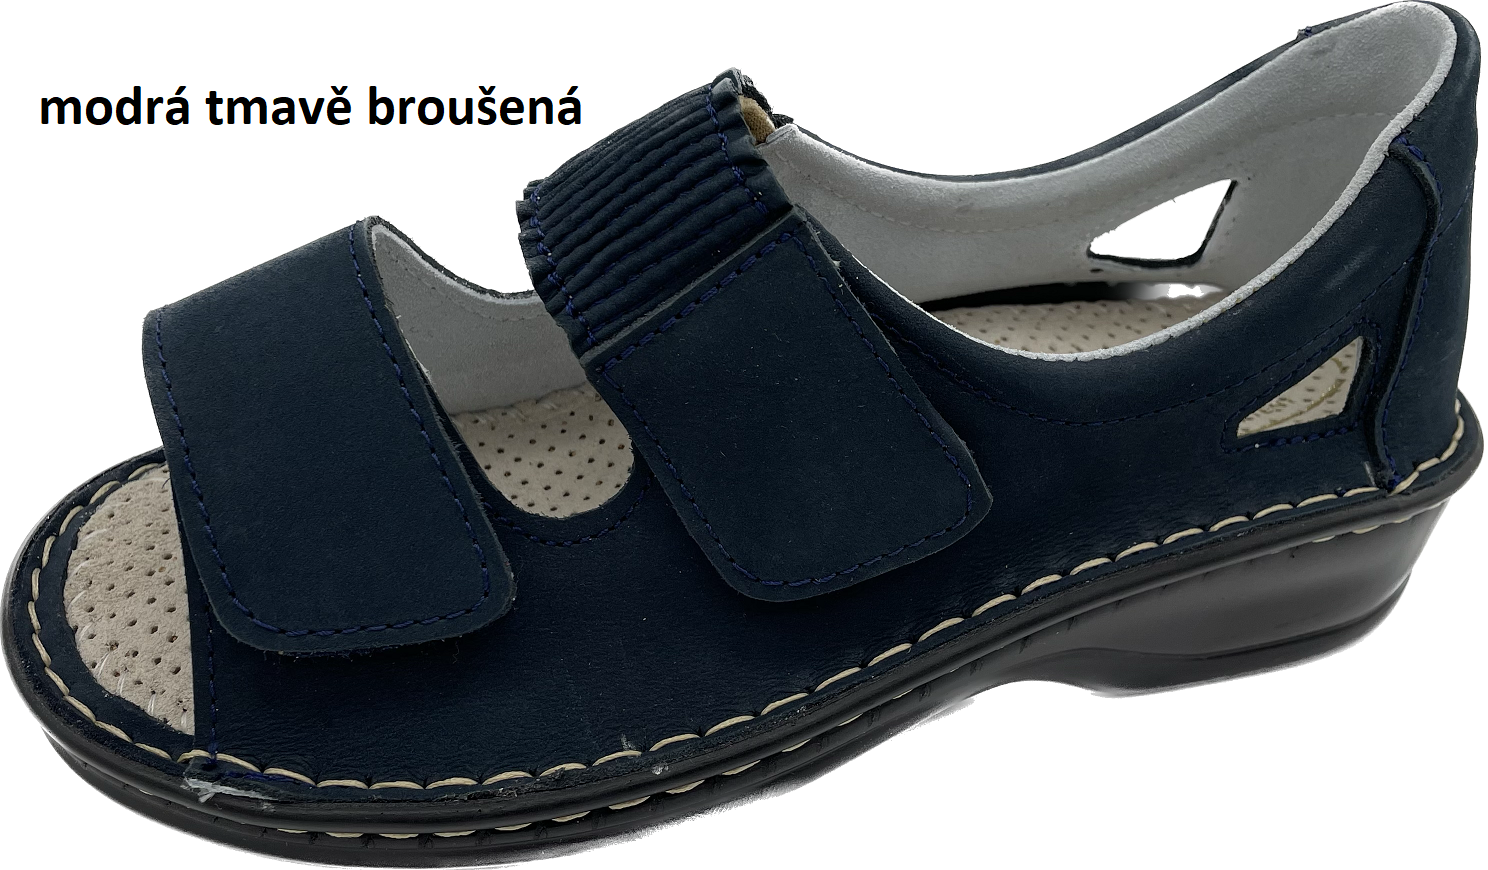 Boty Hanák vzor 306 - černá podešev Barva usně: modrá tmavě broušená, Velikosti obuvi: 40